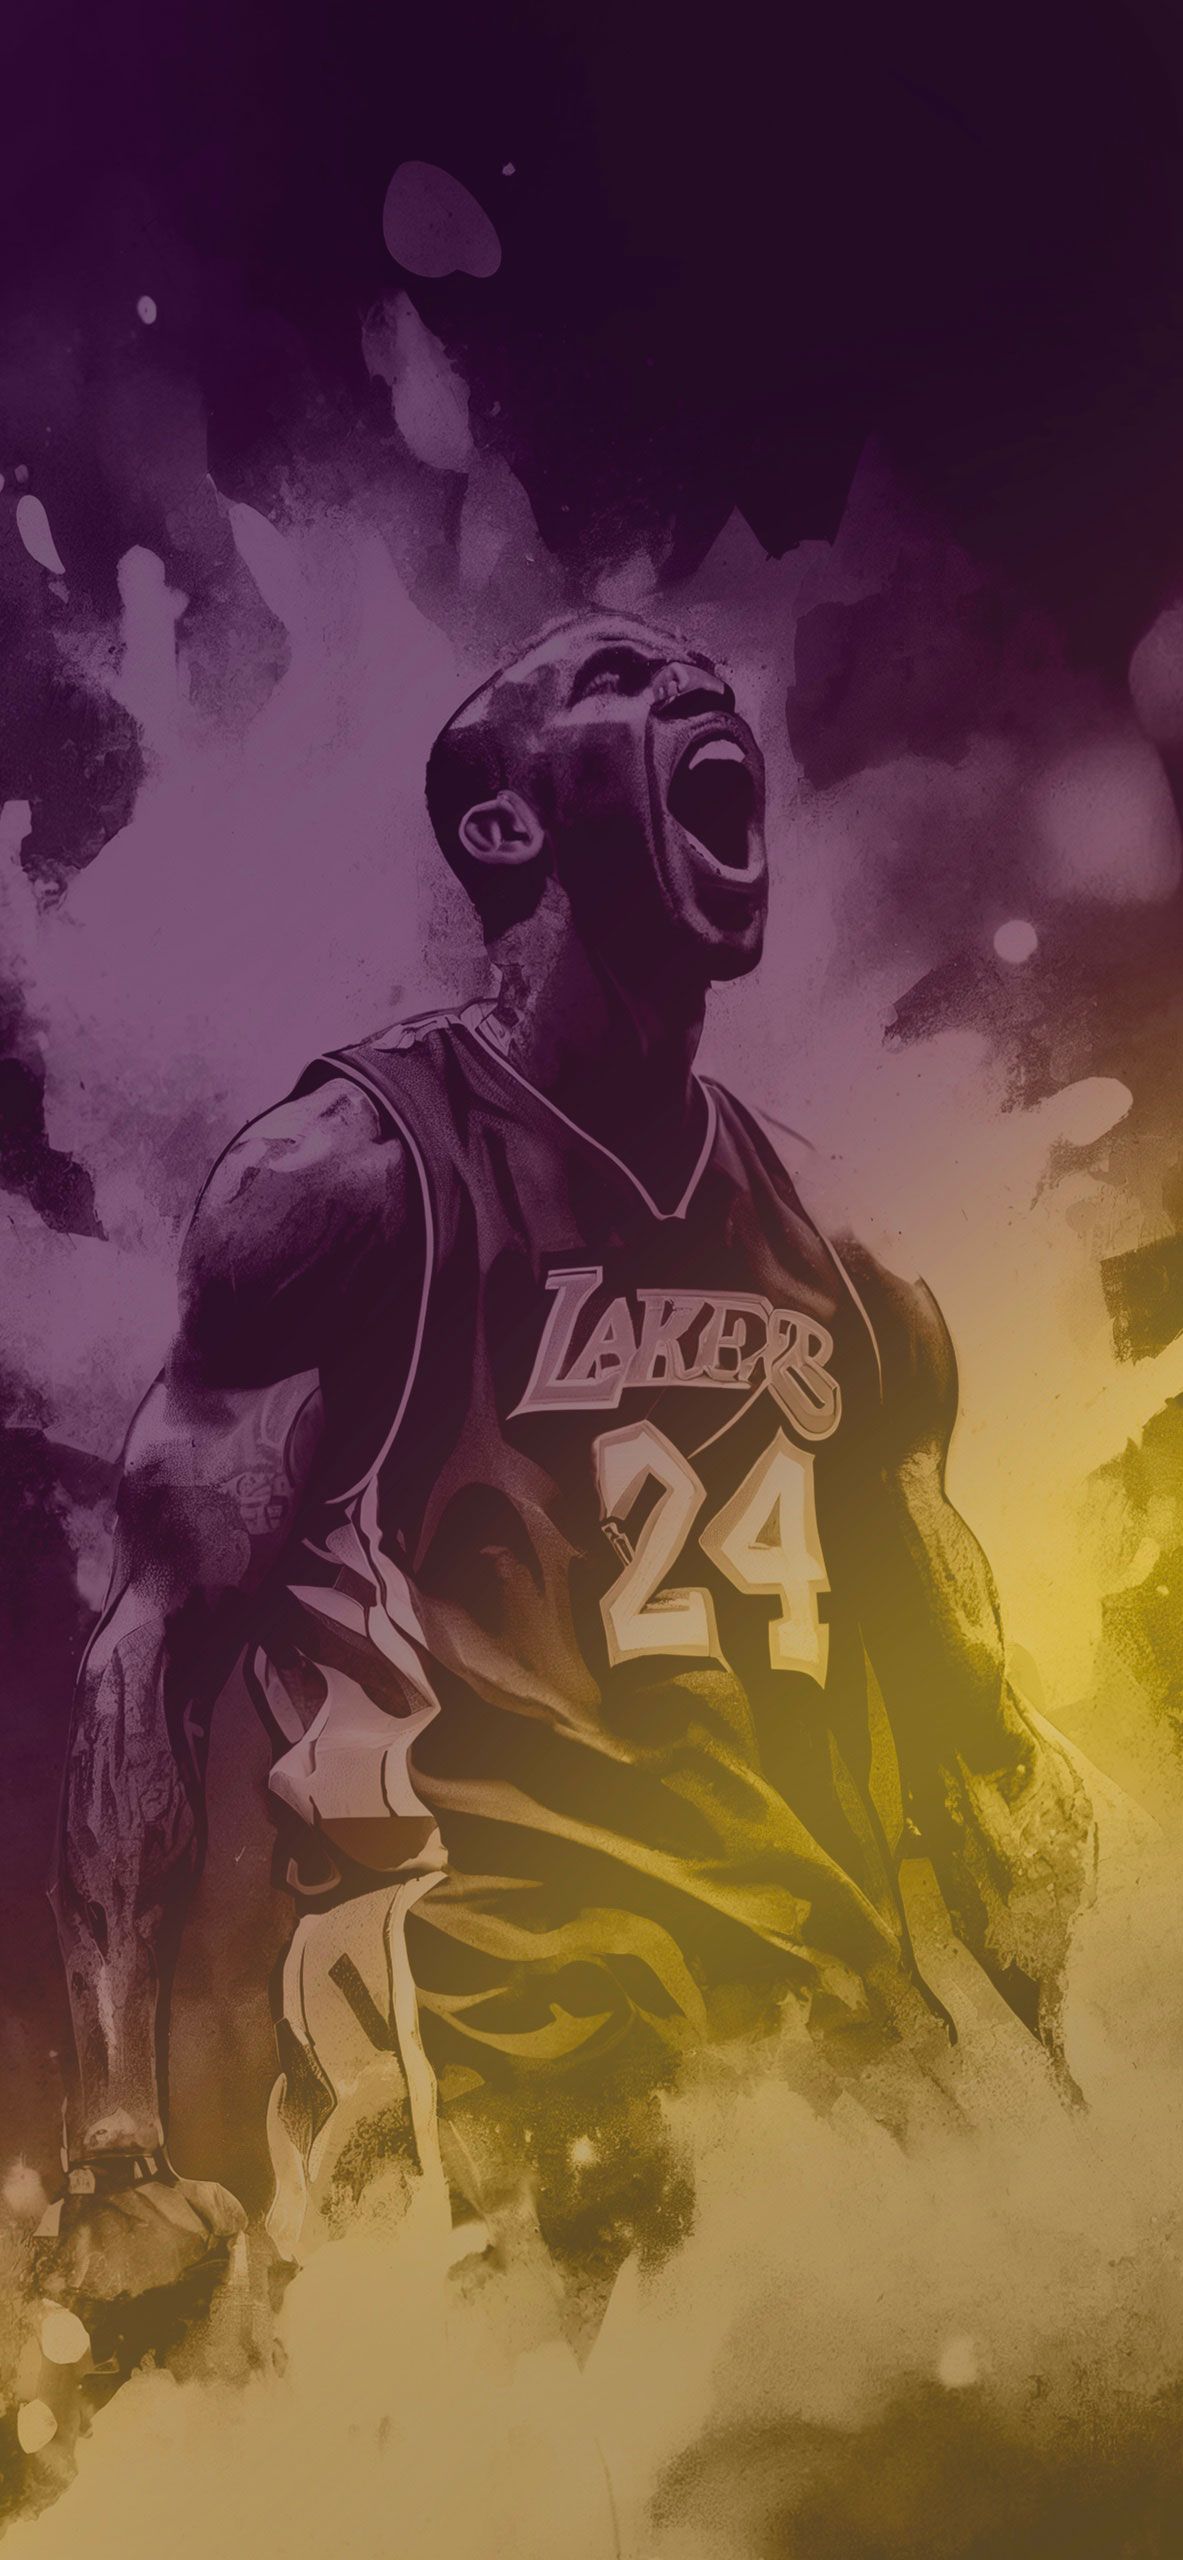  Kobe Bryant Hintergrundbild 1183x2560. Kobe Bryant Art Wallpaper iPhone Kobe Bryant Wallpaper 4k